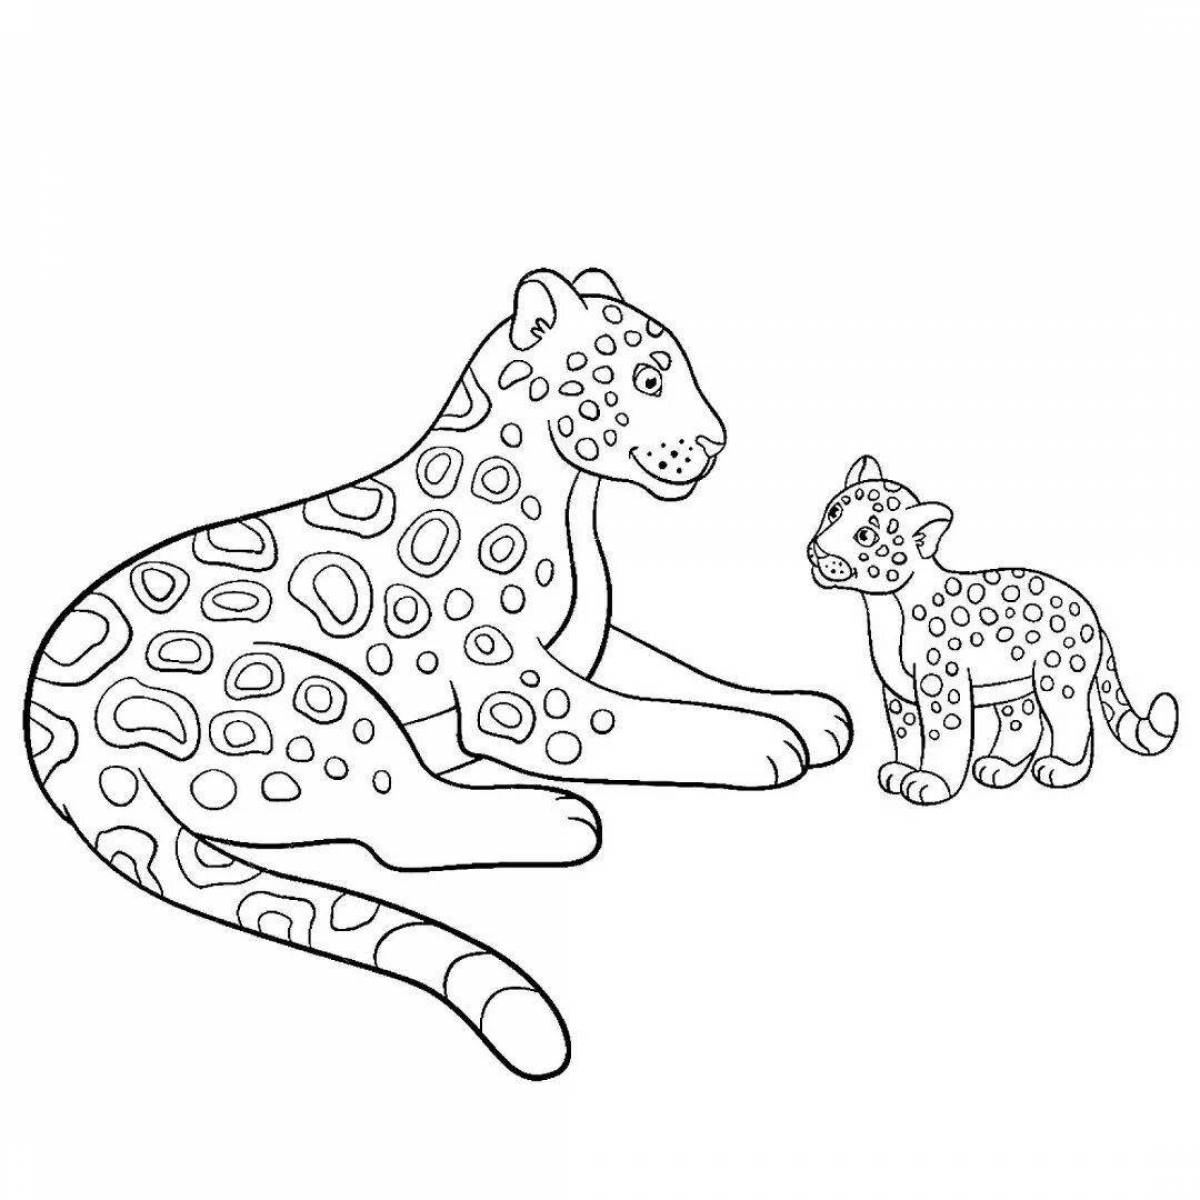 Jaguar fun coloring book for kids